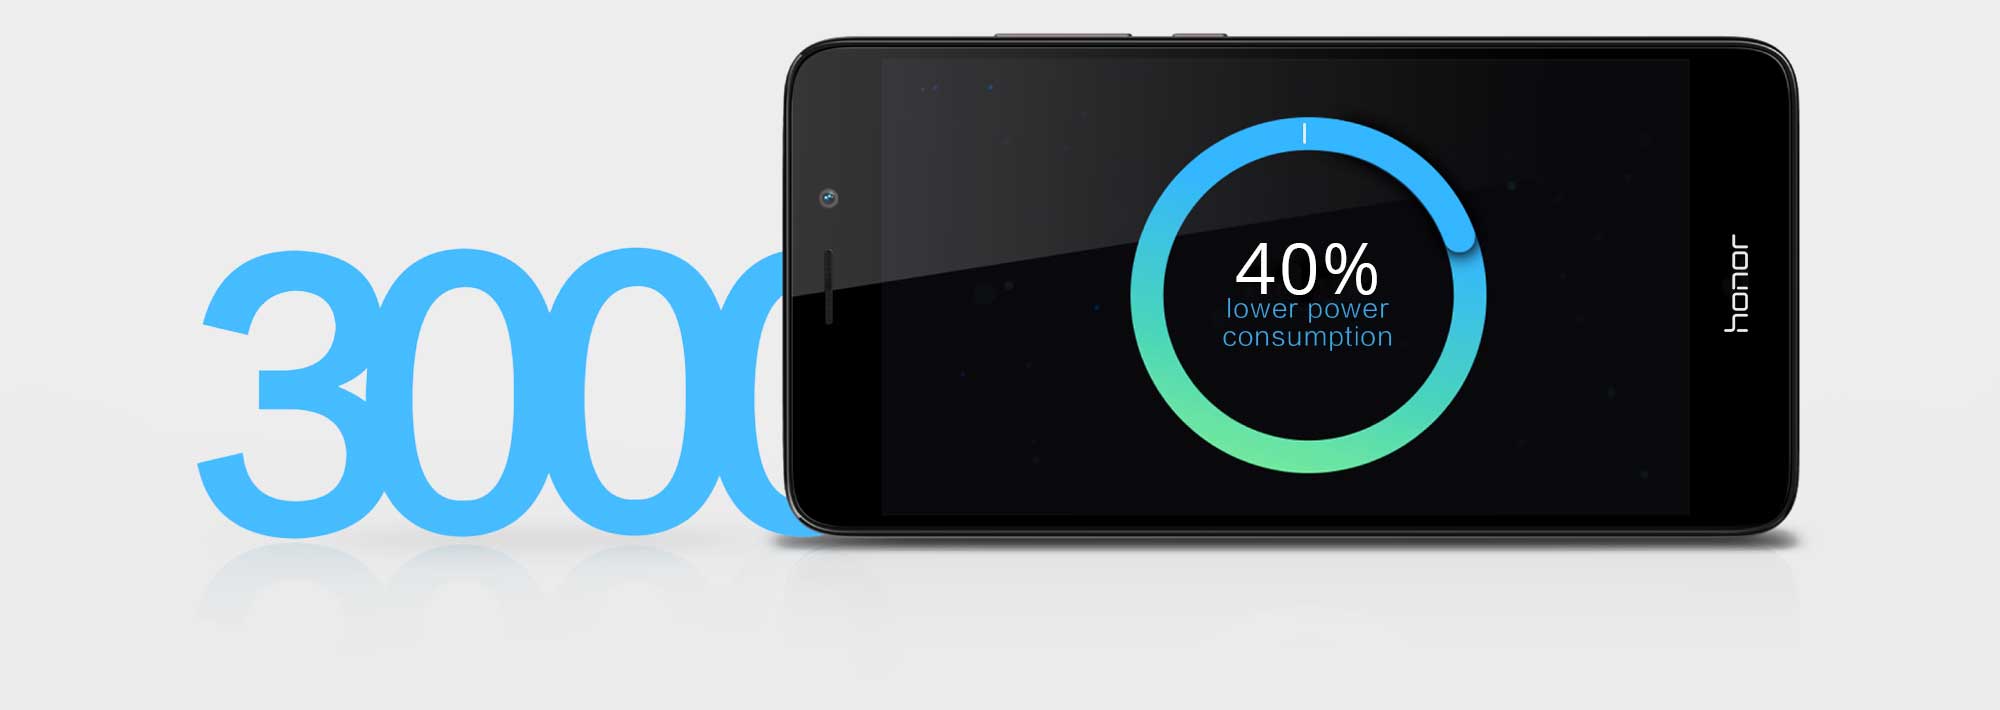 Baterie je jedním z hlavních lákadel mobilu Honor 7 Lite, nabídne neuvěřitelných 3000 mAh kapacity.